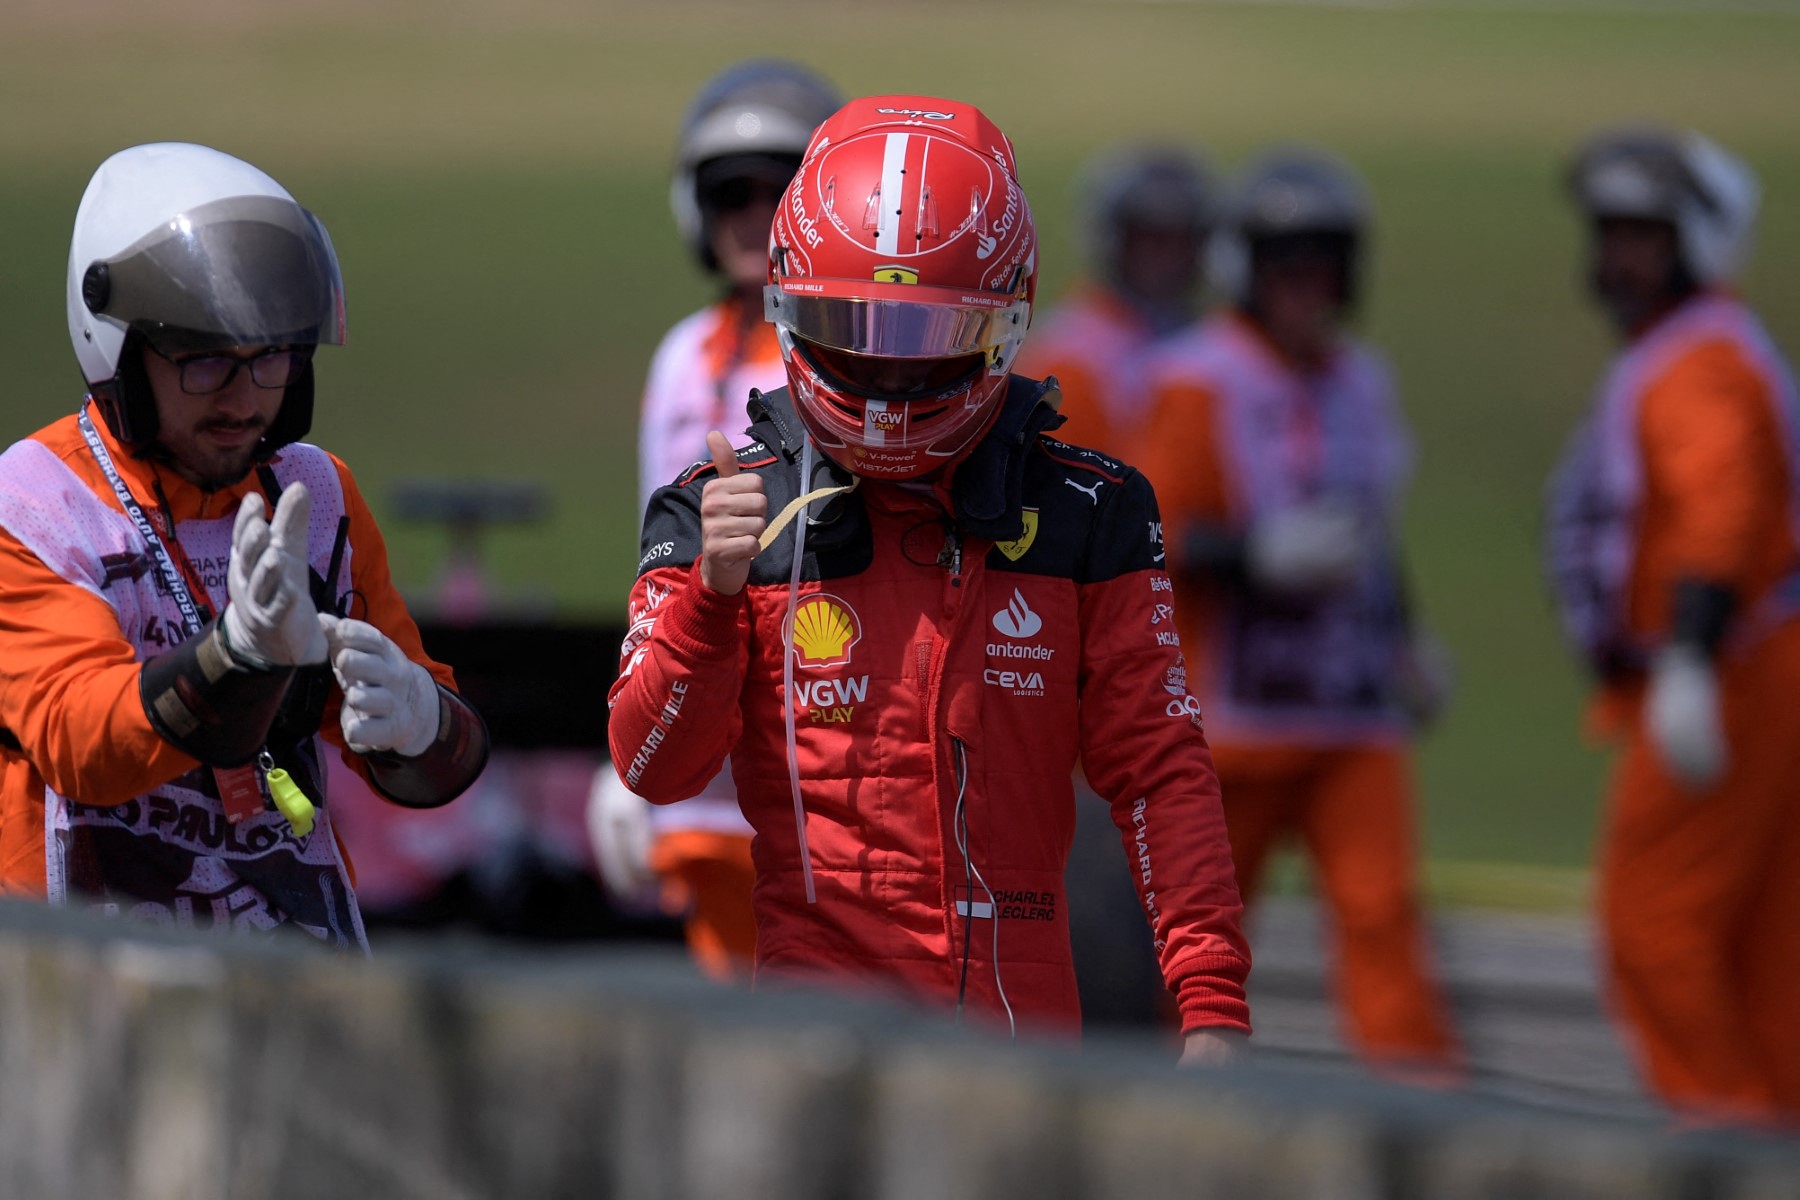 “Está loco”: el video de Charles Leclerc después de ganar el GP de Mónaco de Fórmula 1 que sorprendió a los fanáticos